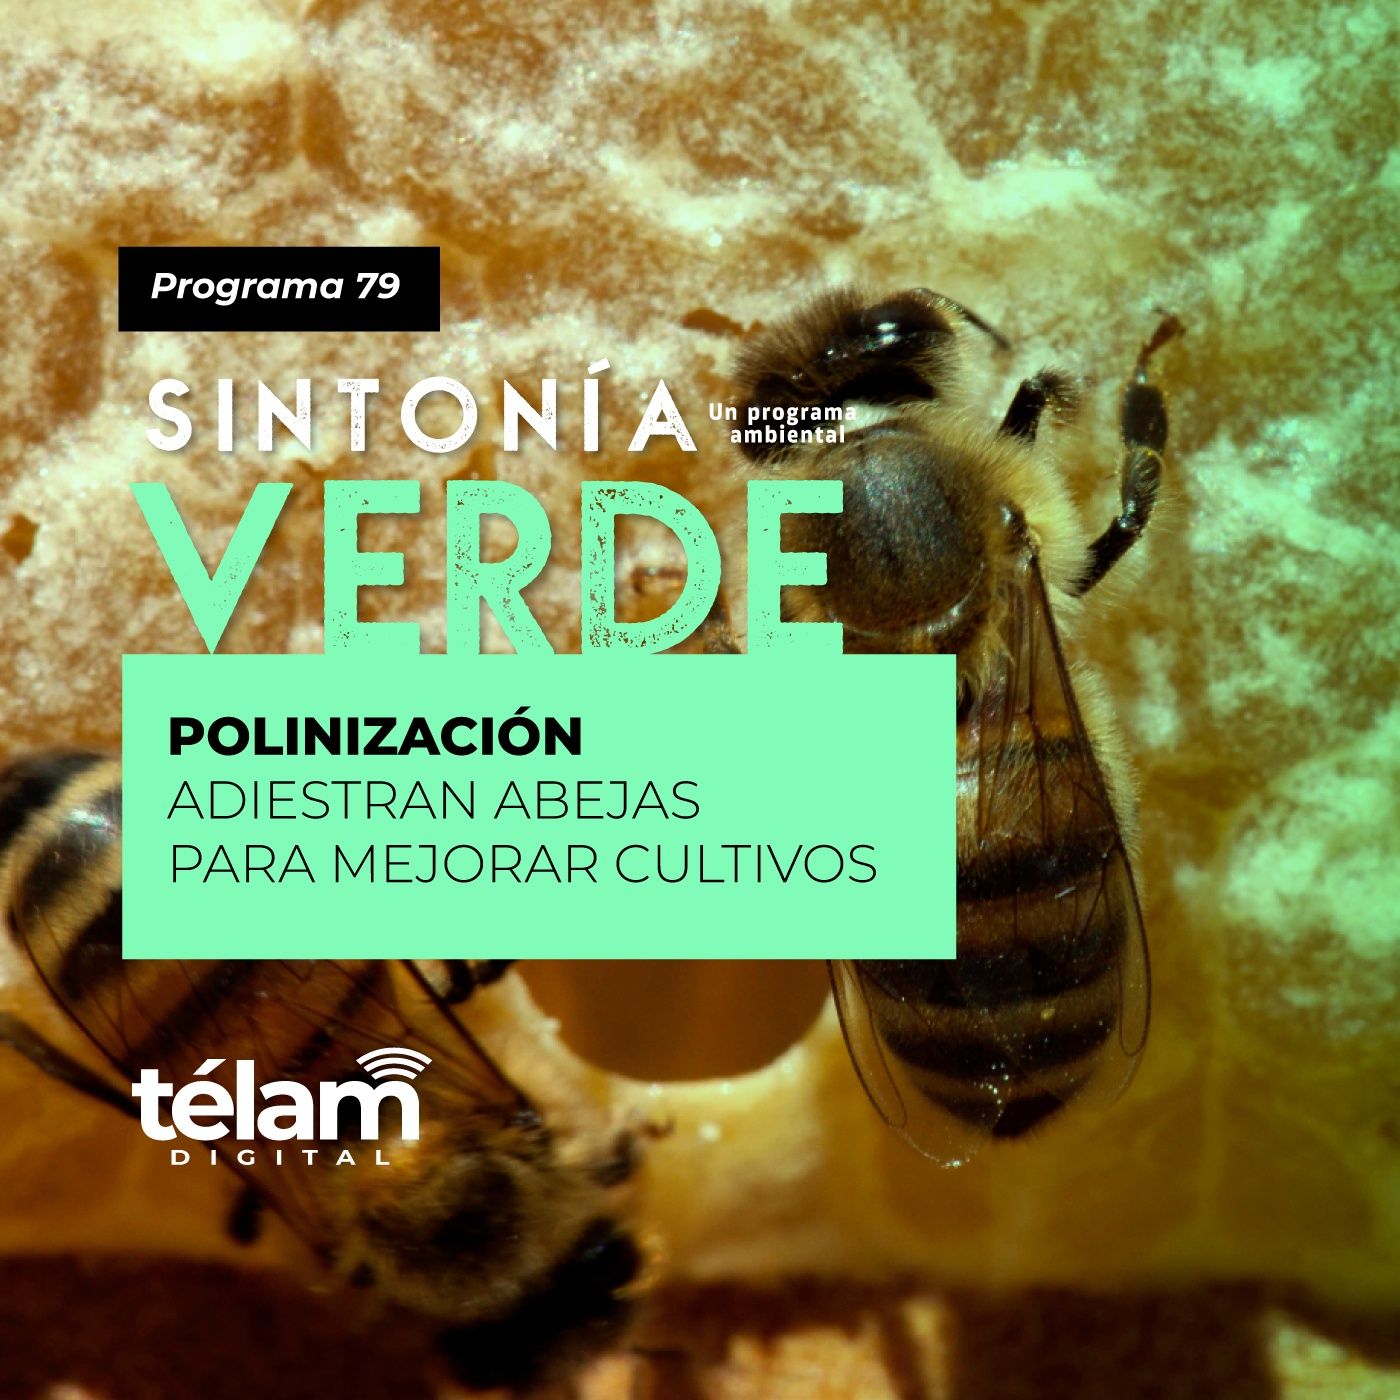 Polinización: Adiestran abejas para mejorar cultivos